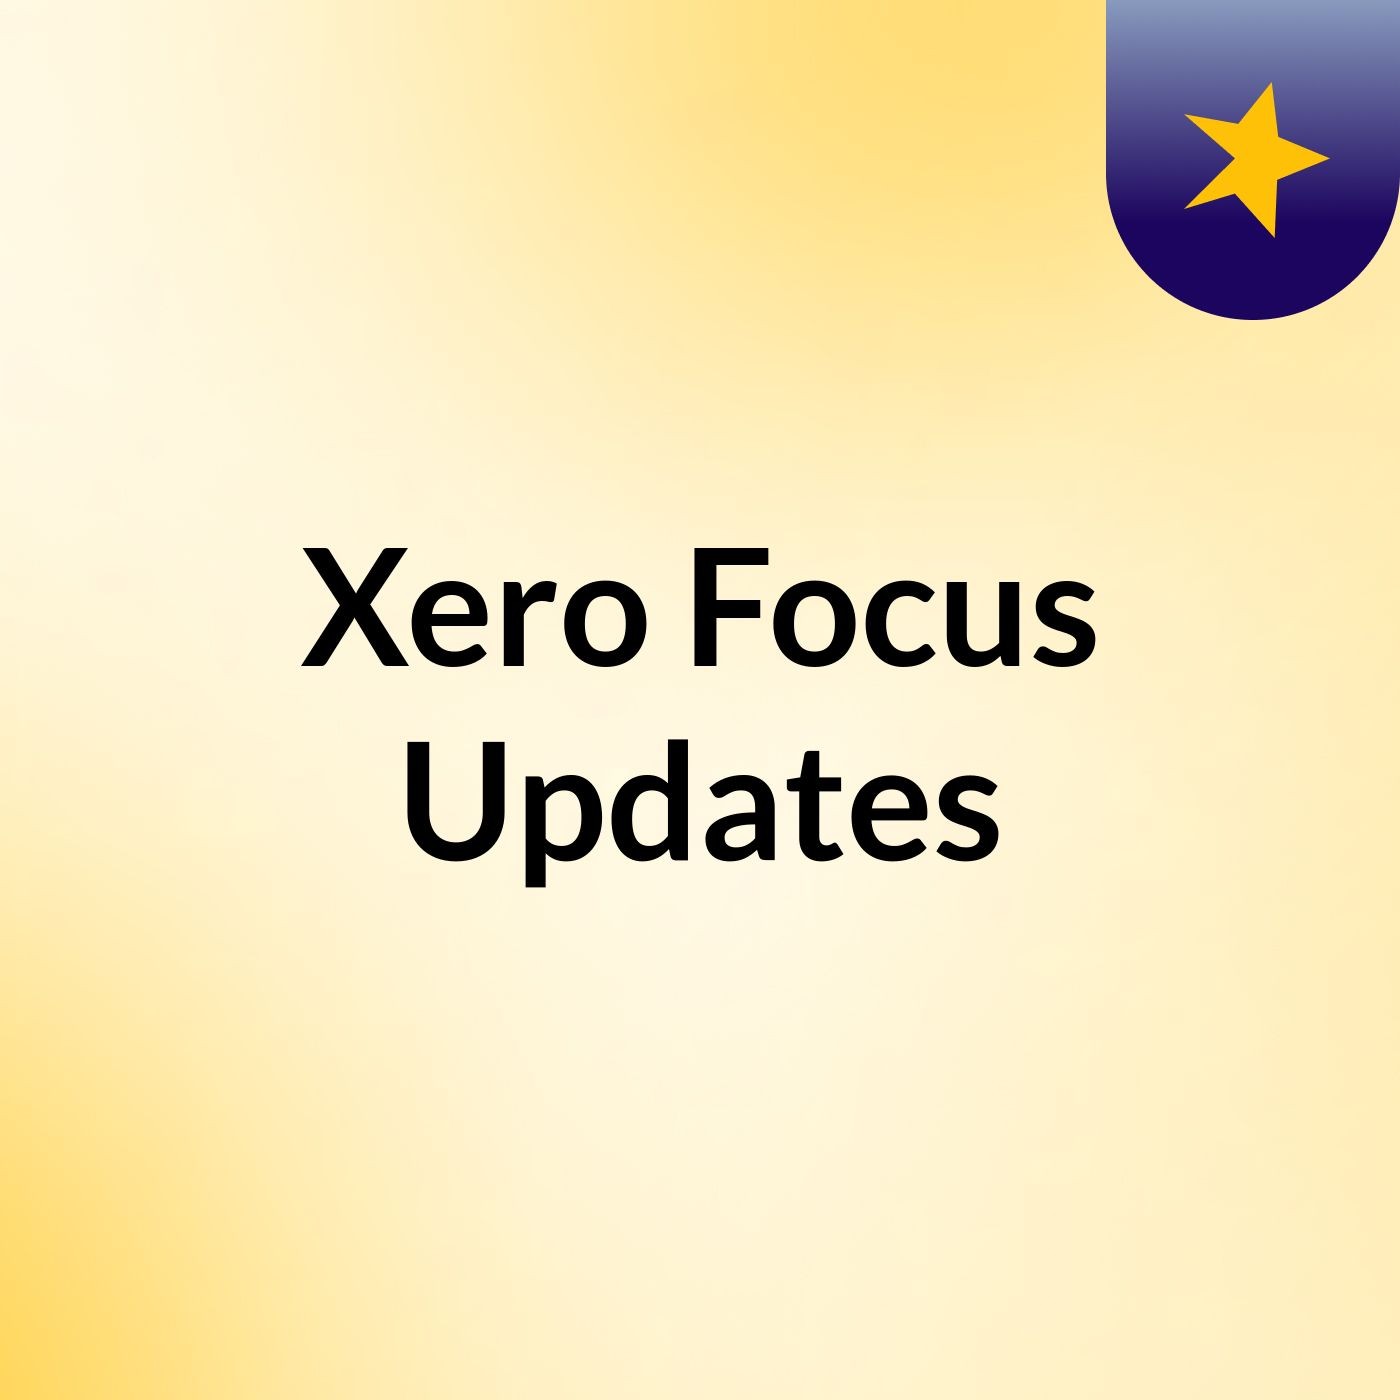 Xero Focus Updates